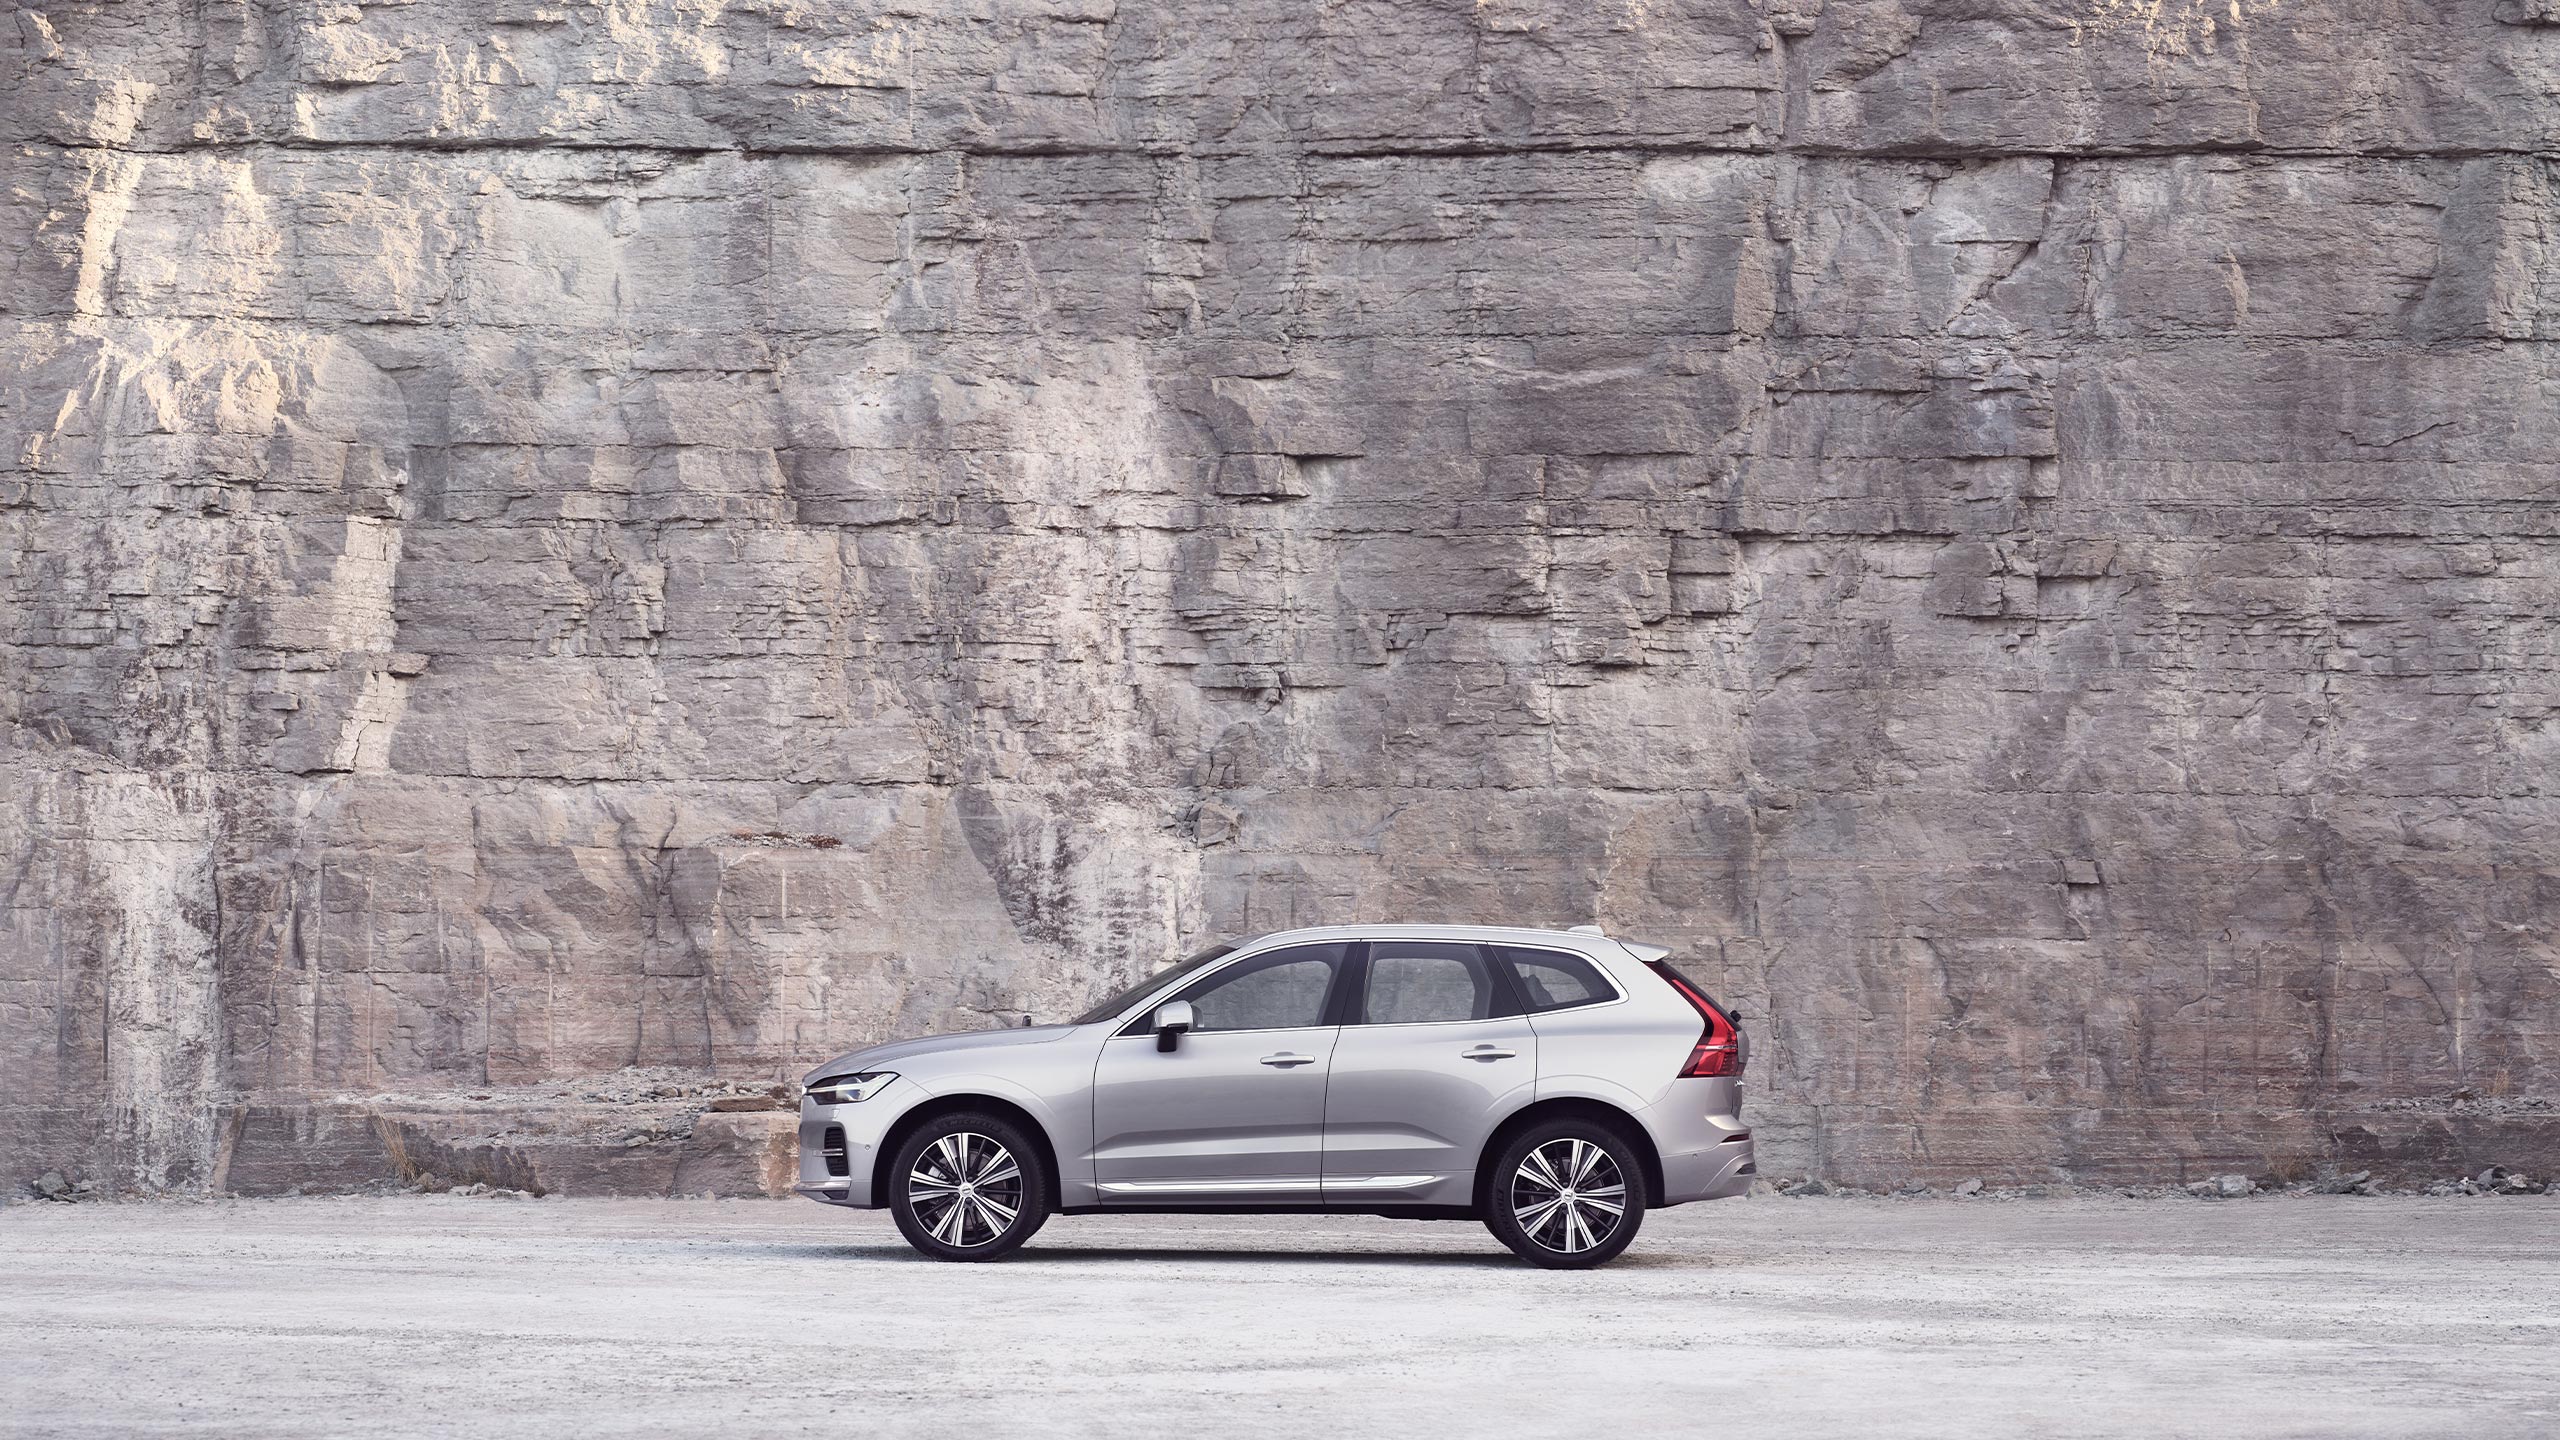 Una Volvo XC60 ferma davanti a una parete rocciosa.